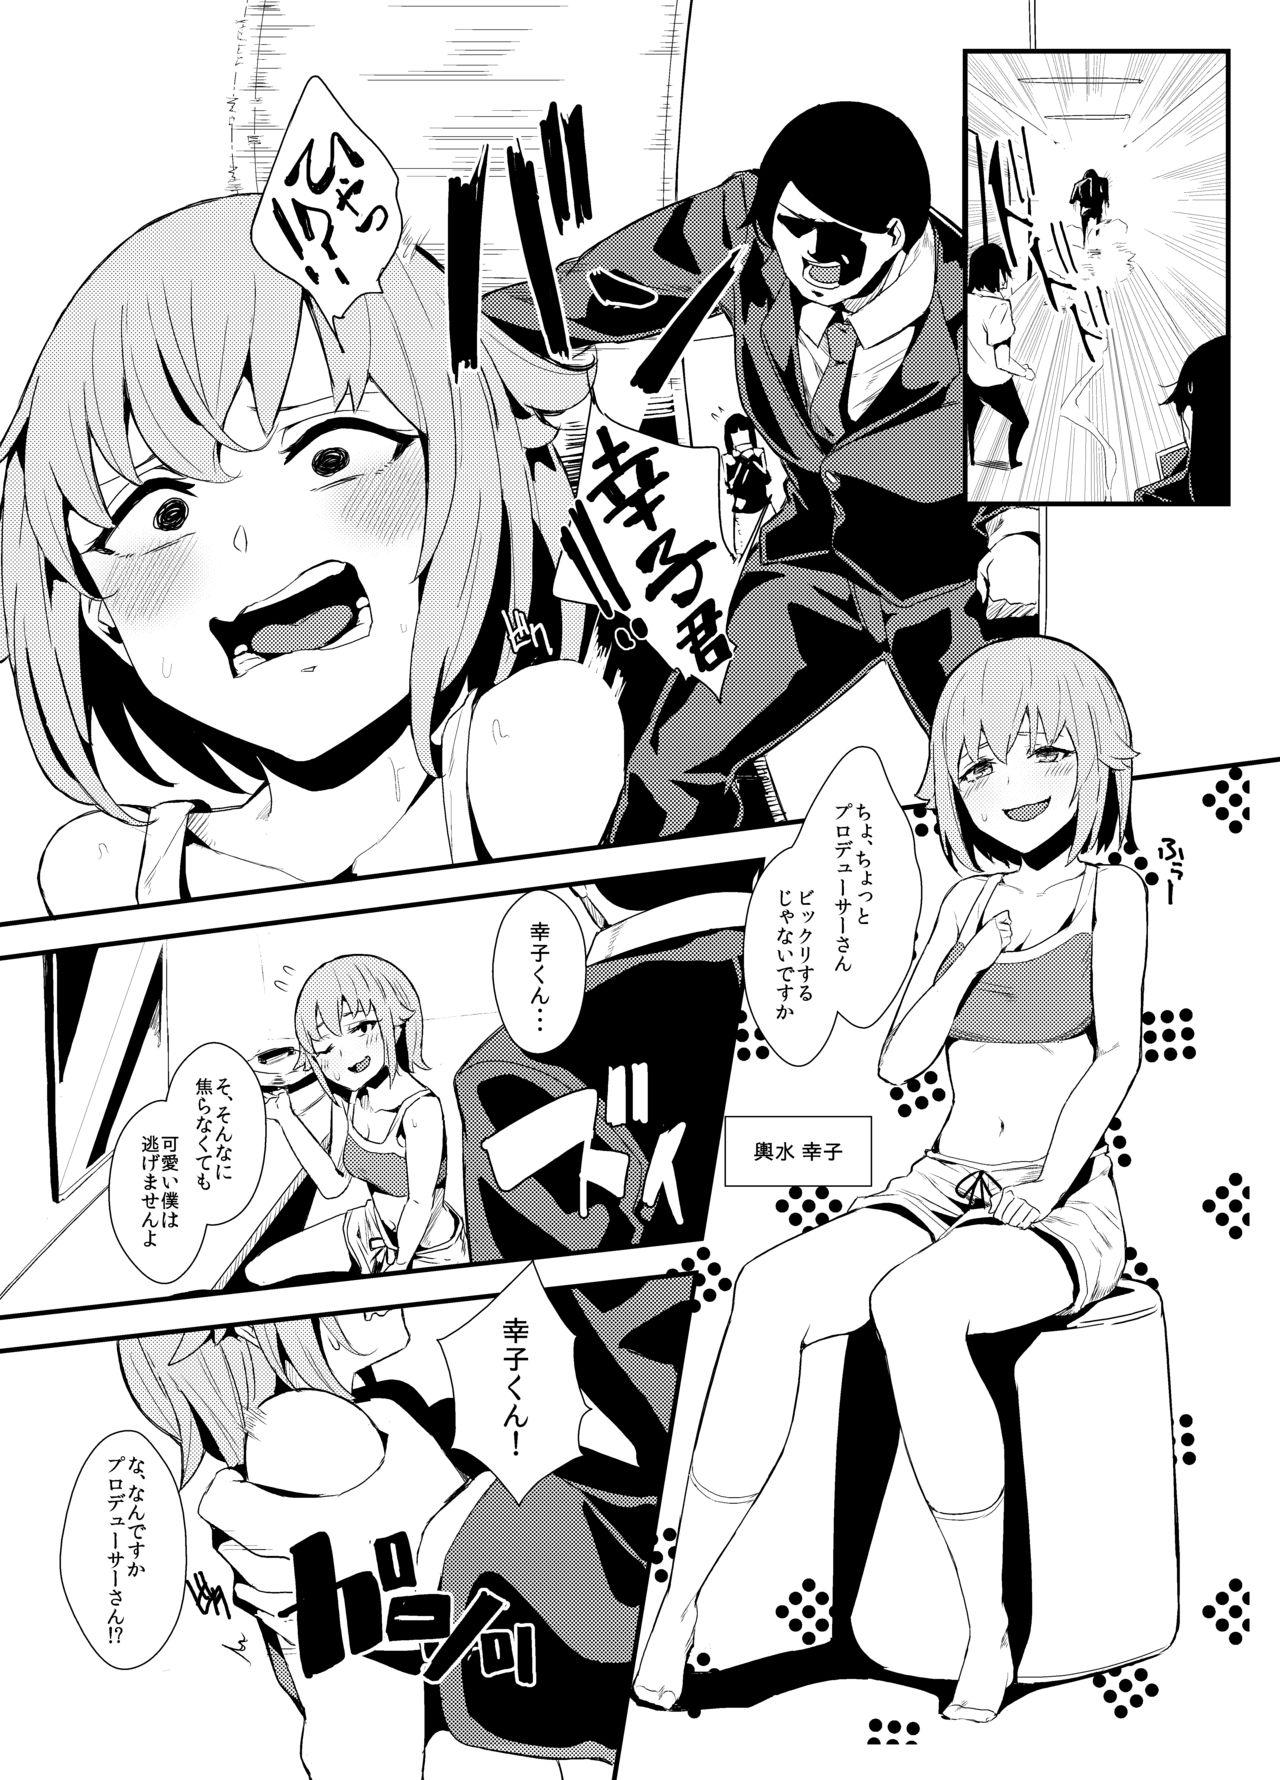 Analfucking Koshimizu Sachiko no Himitsu Tokkun - The idolmaster Girl Fuck - Page 3